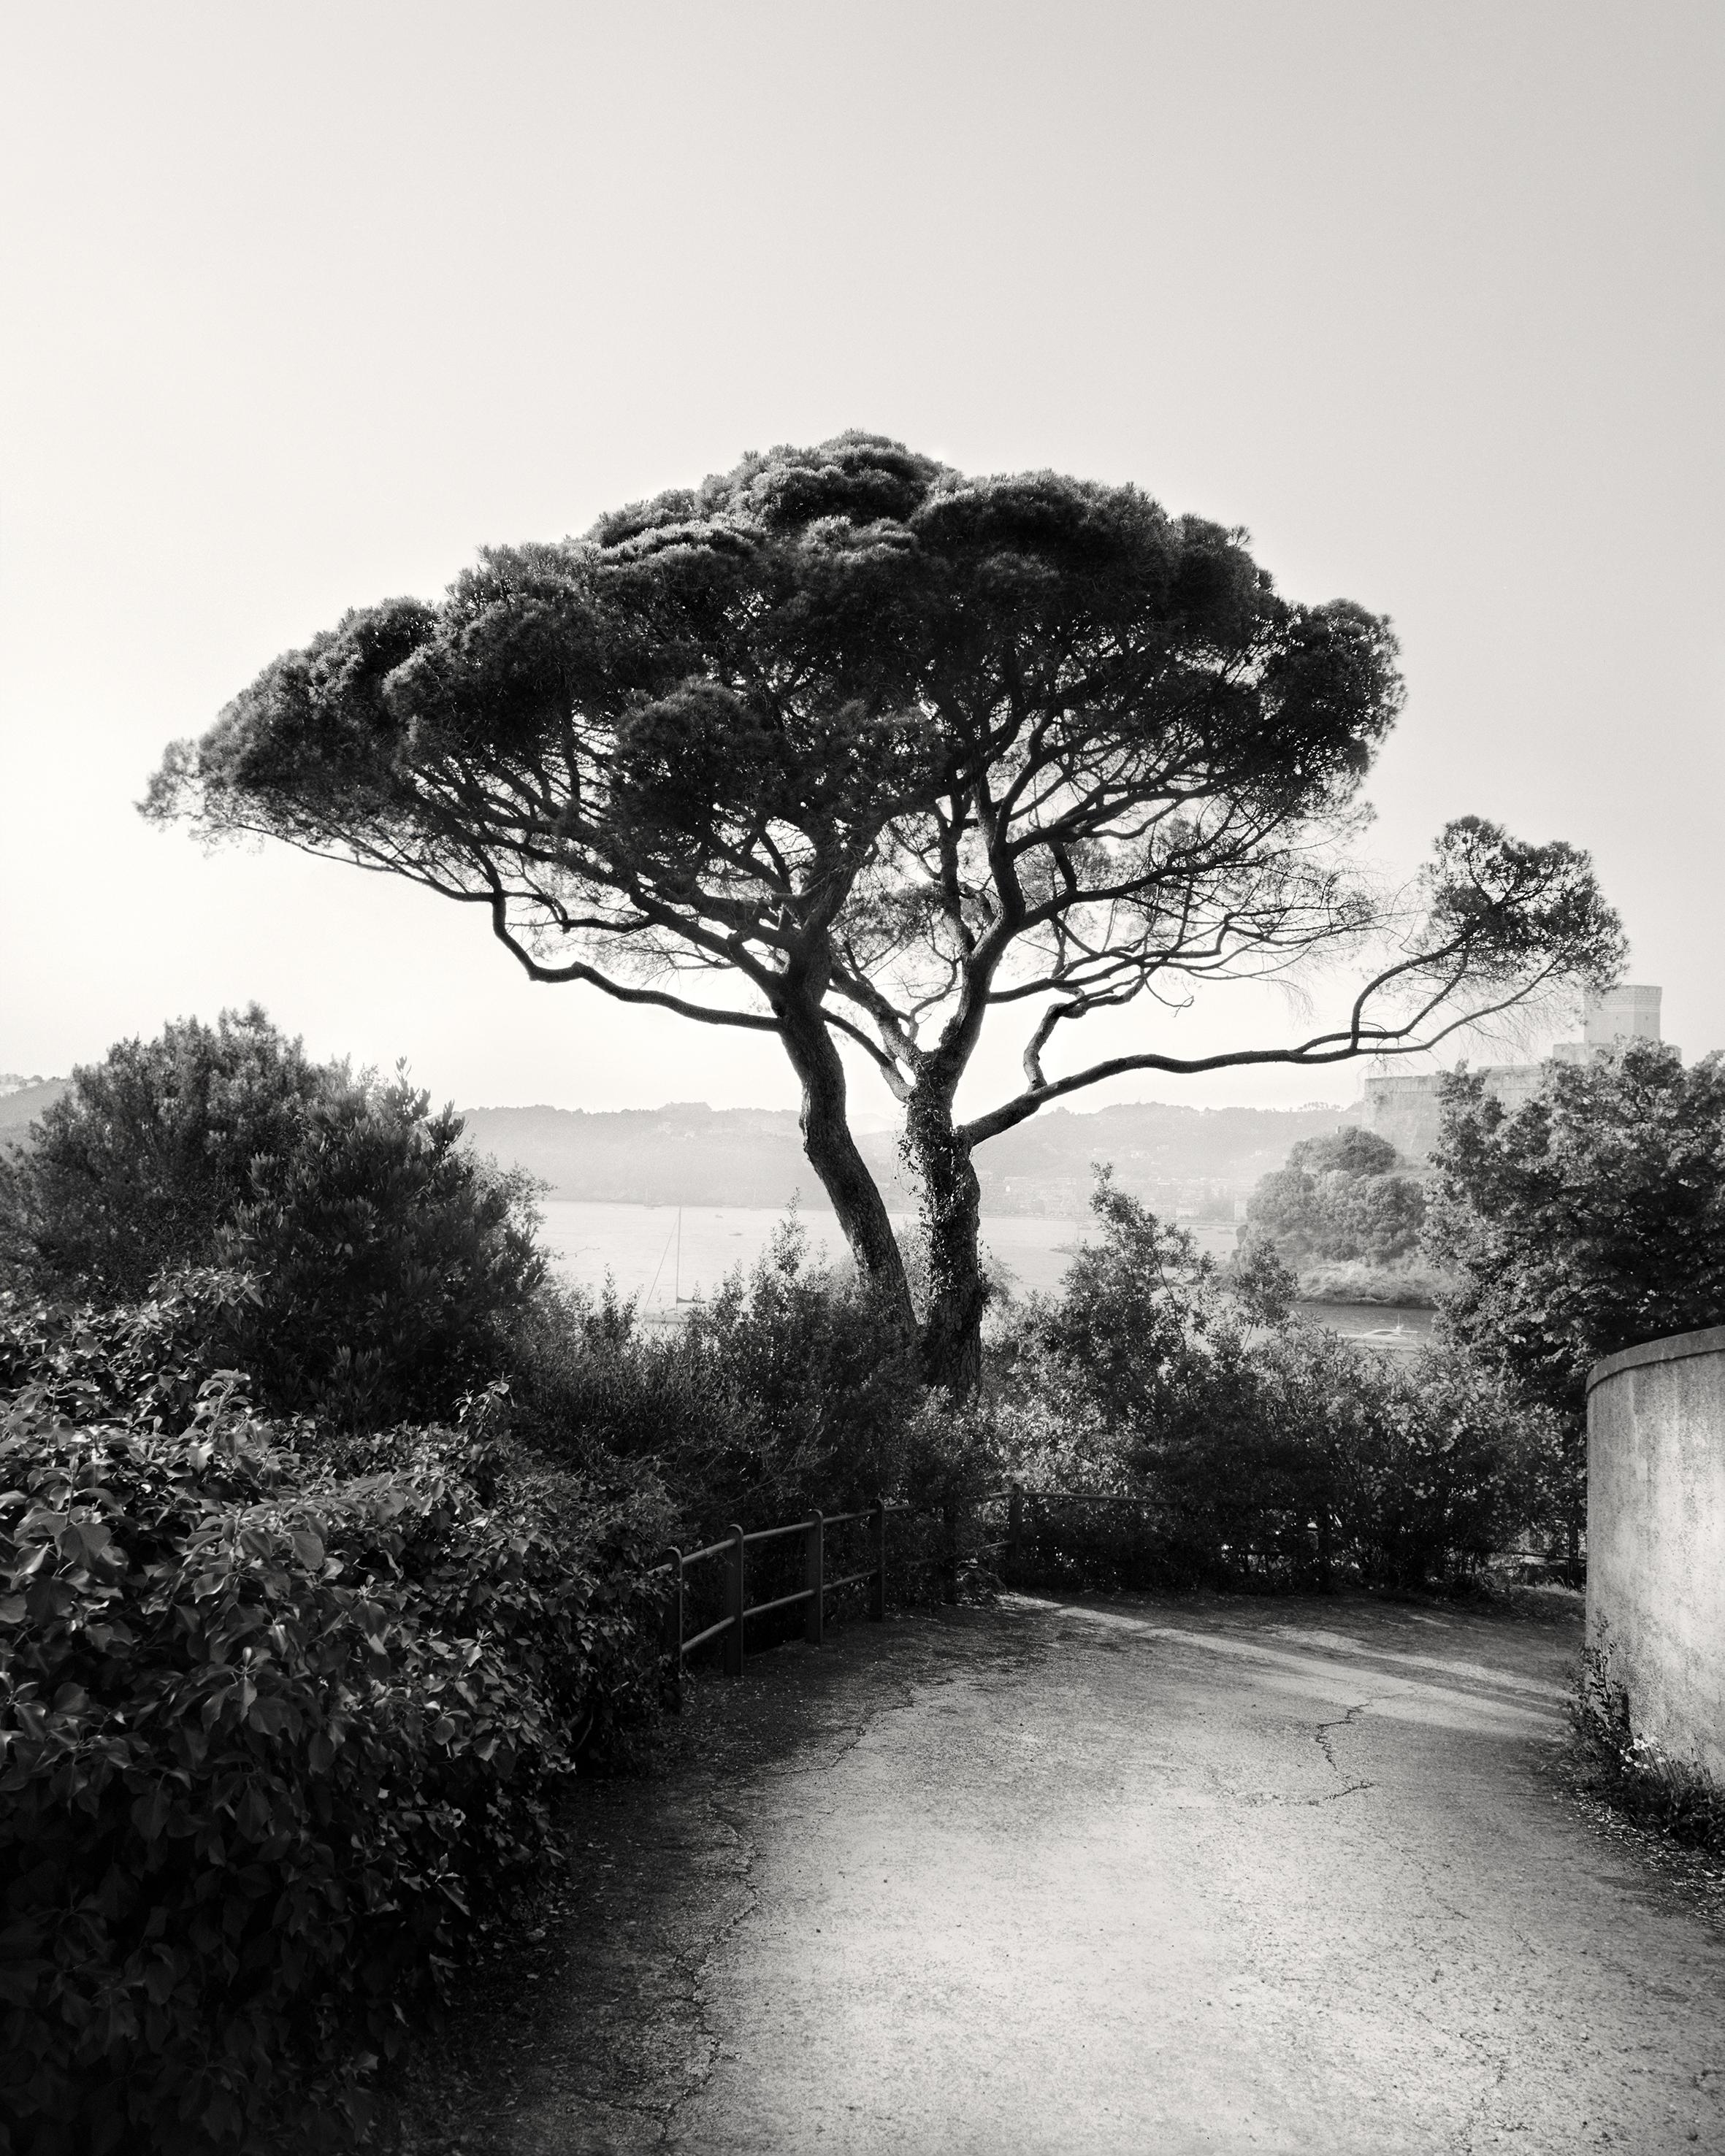 Ugne Pouwell Black and White Photograph – Bay of Poets – Schwarz-Weiß-Fotografie der italienischen Küstenfotografie, limitierte Auflage von 20 Stück